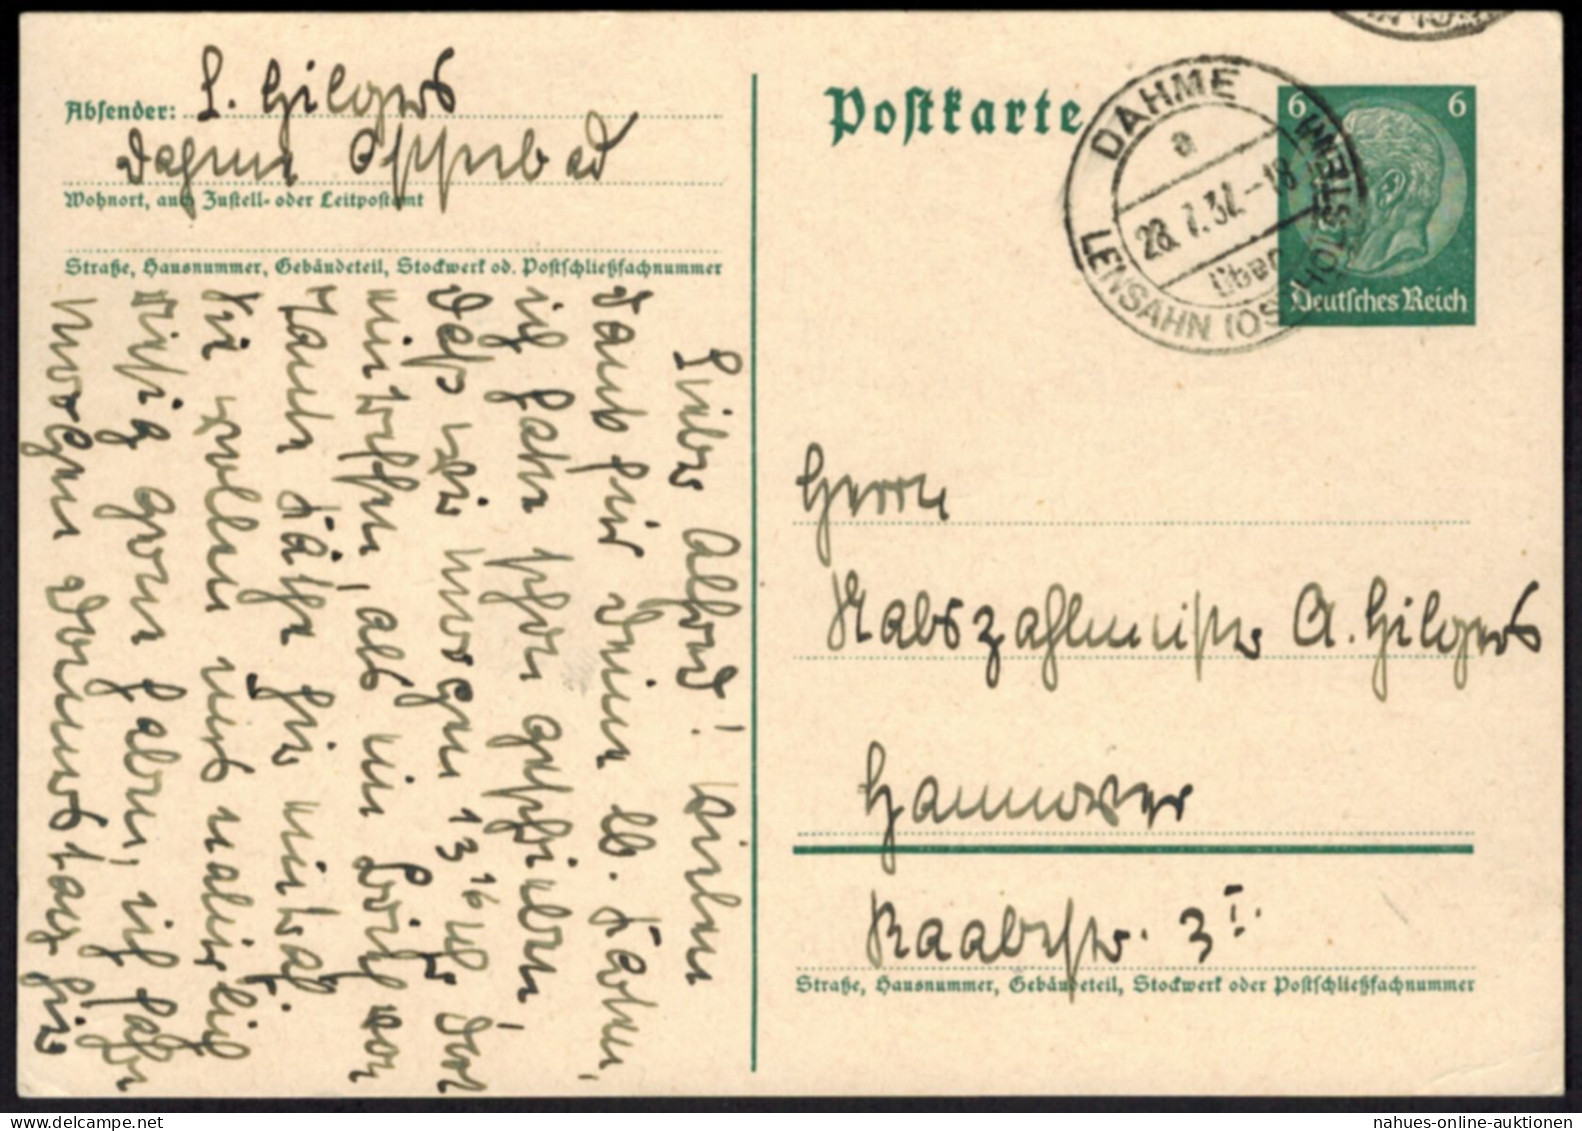 Hindenburg Ganzsache Landpoststempel Dahme über Lensahn Schleswig-Holstein 1932 - Storia Postale